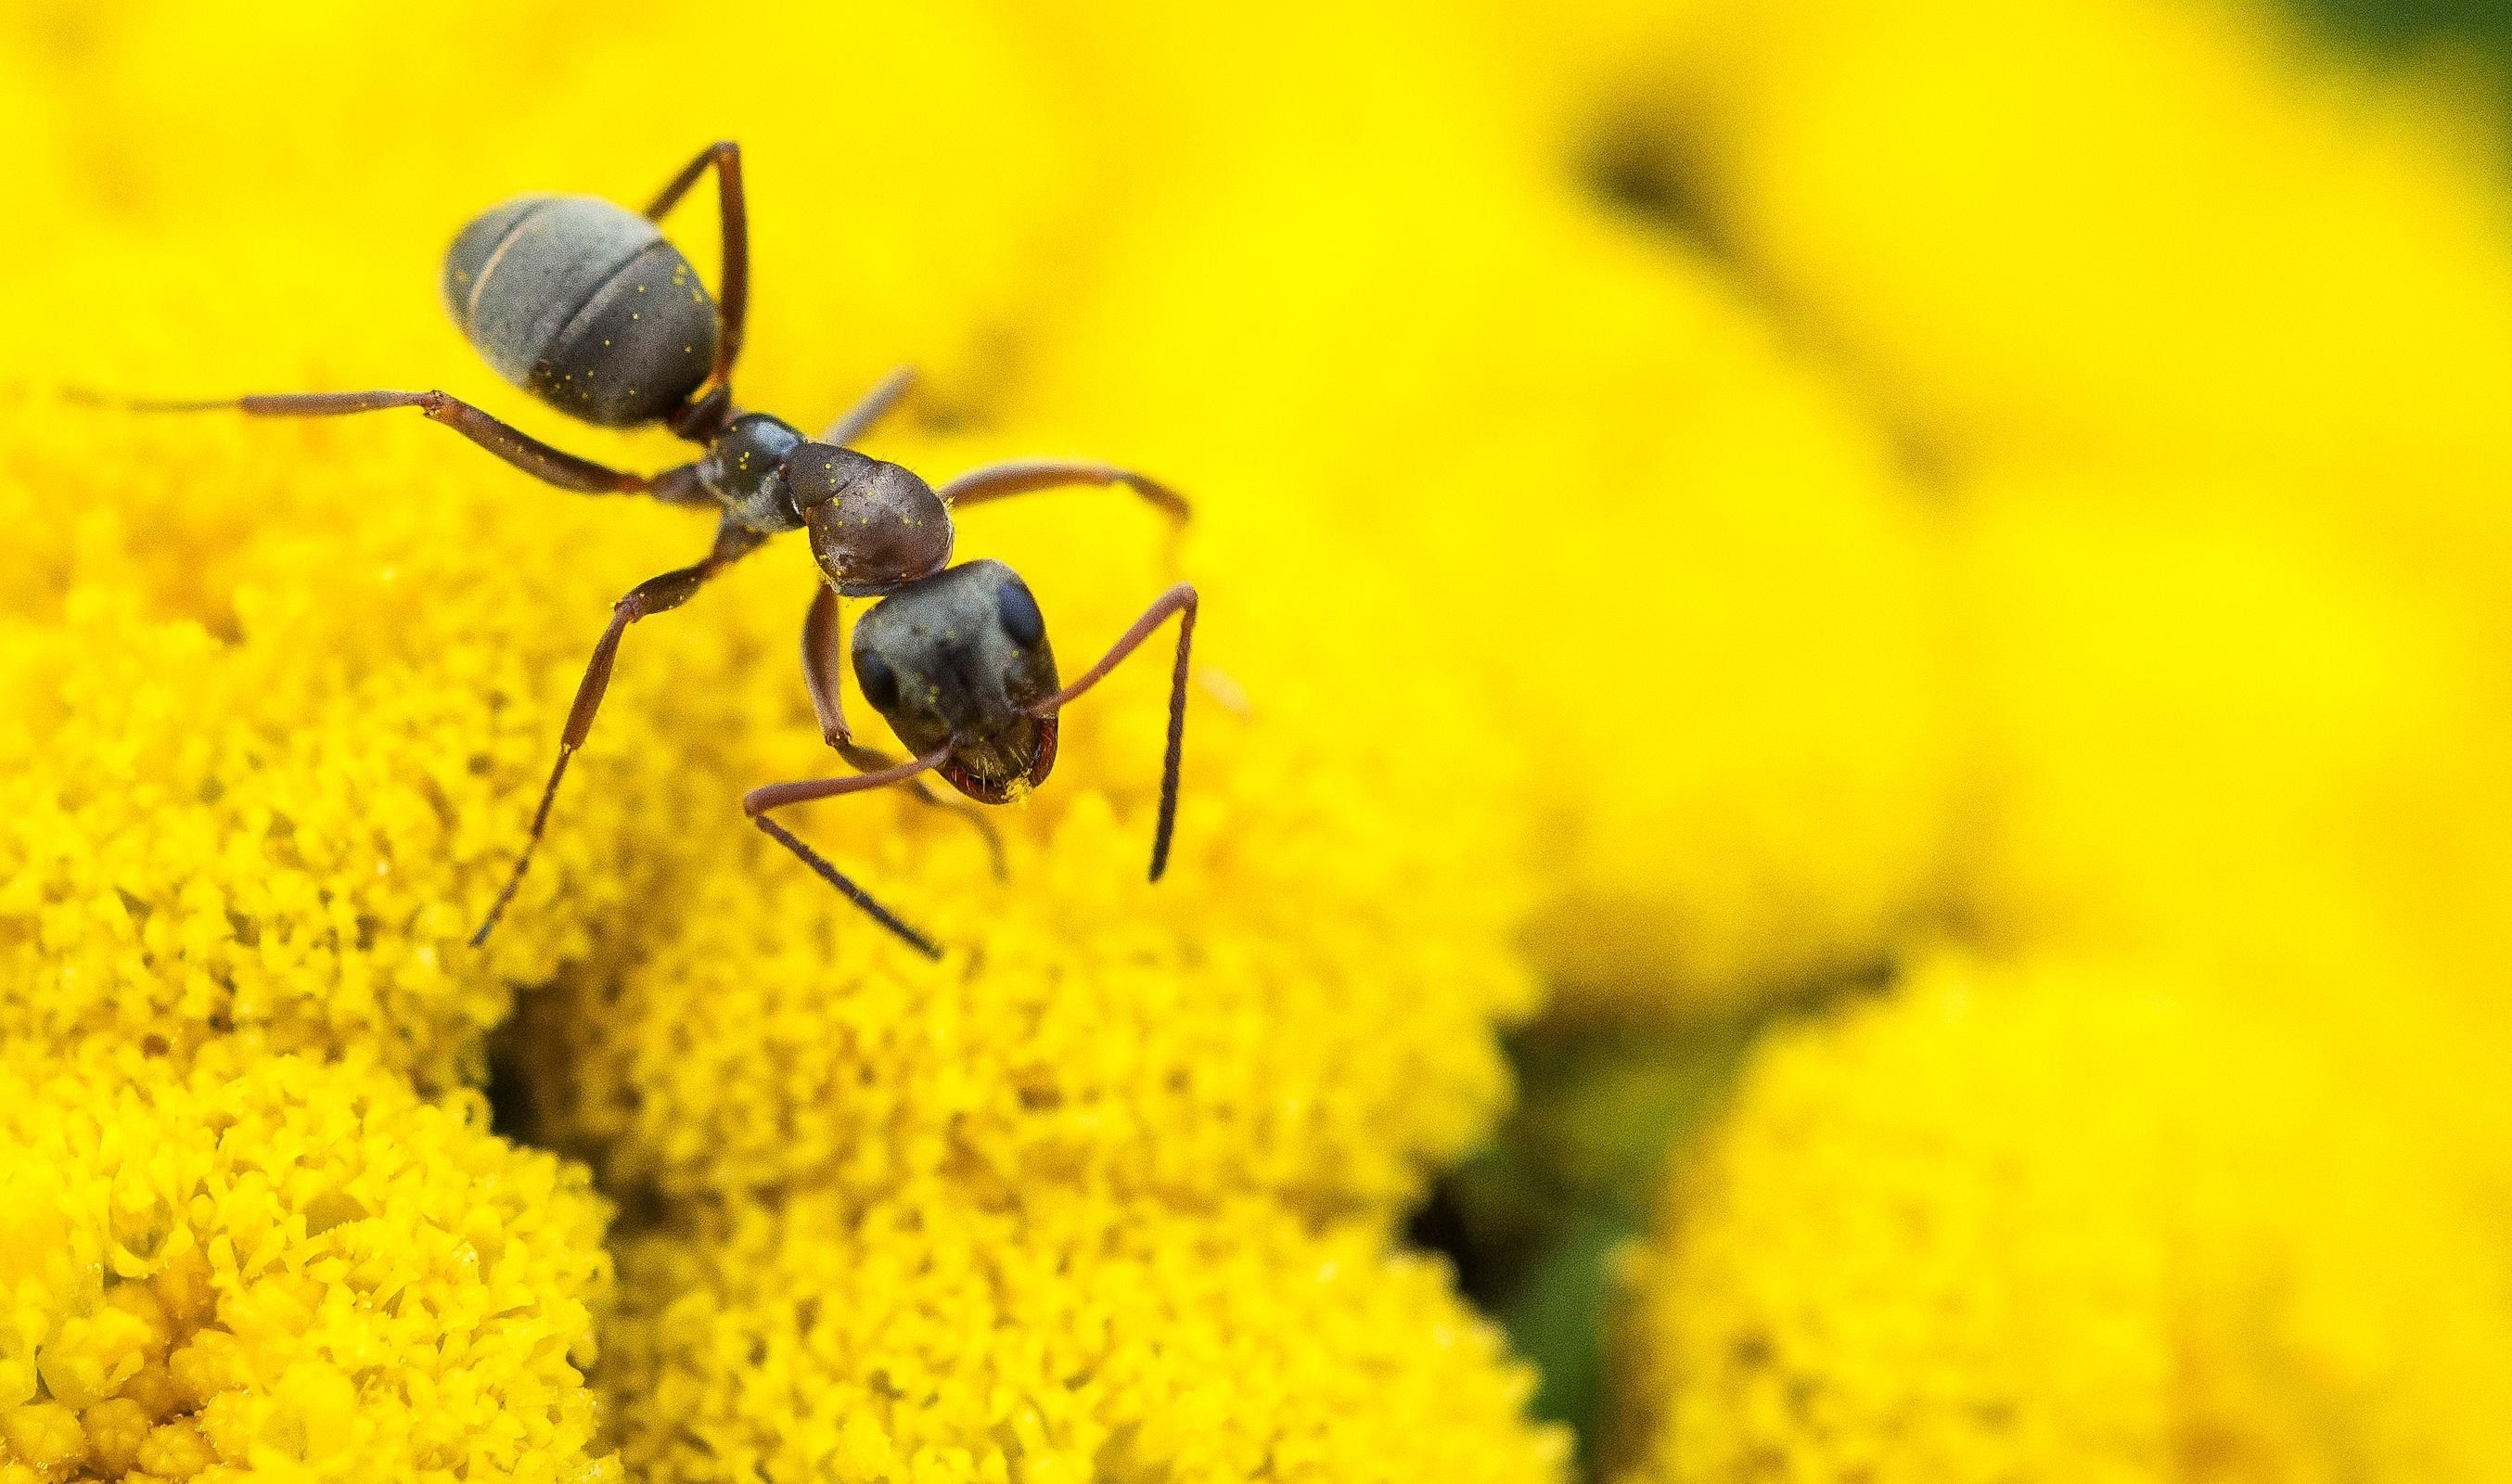 دانلود تصویر مورچه بخشی جدایی ناپذیر از دنیای طبیعی